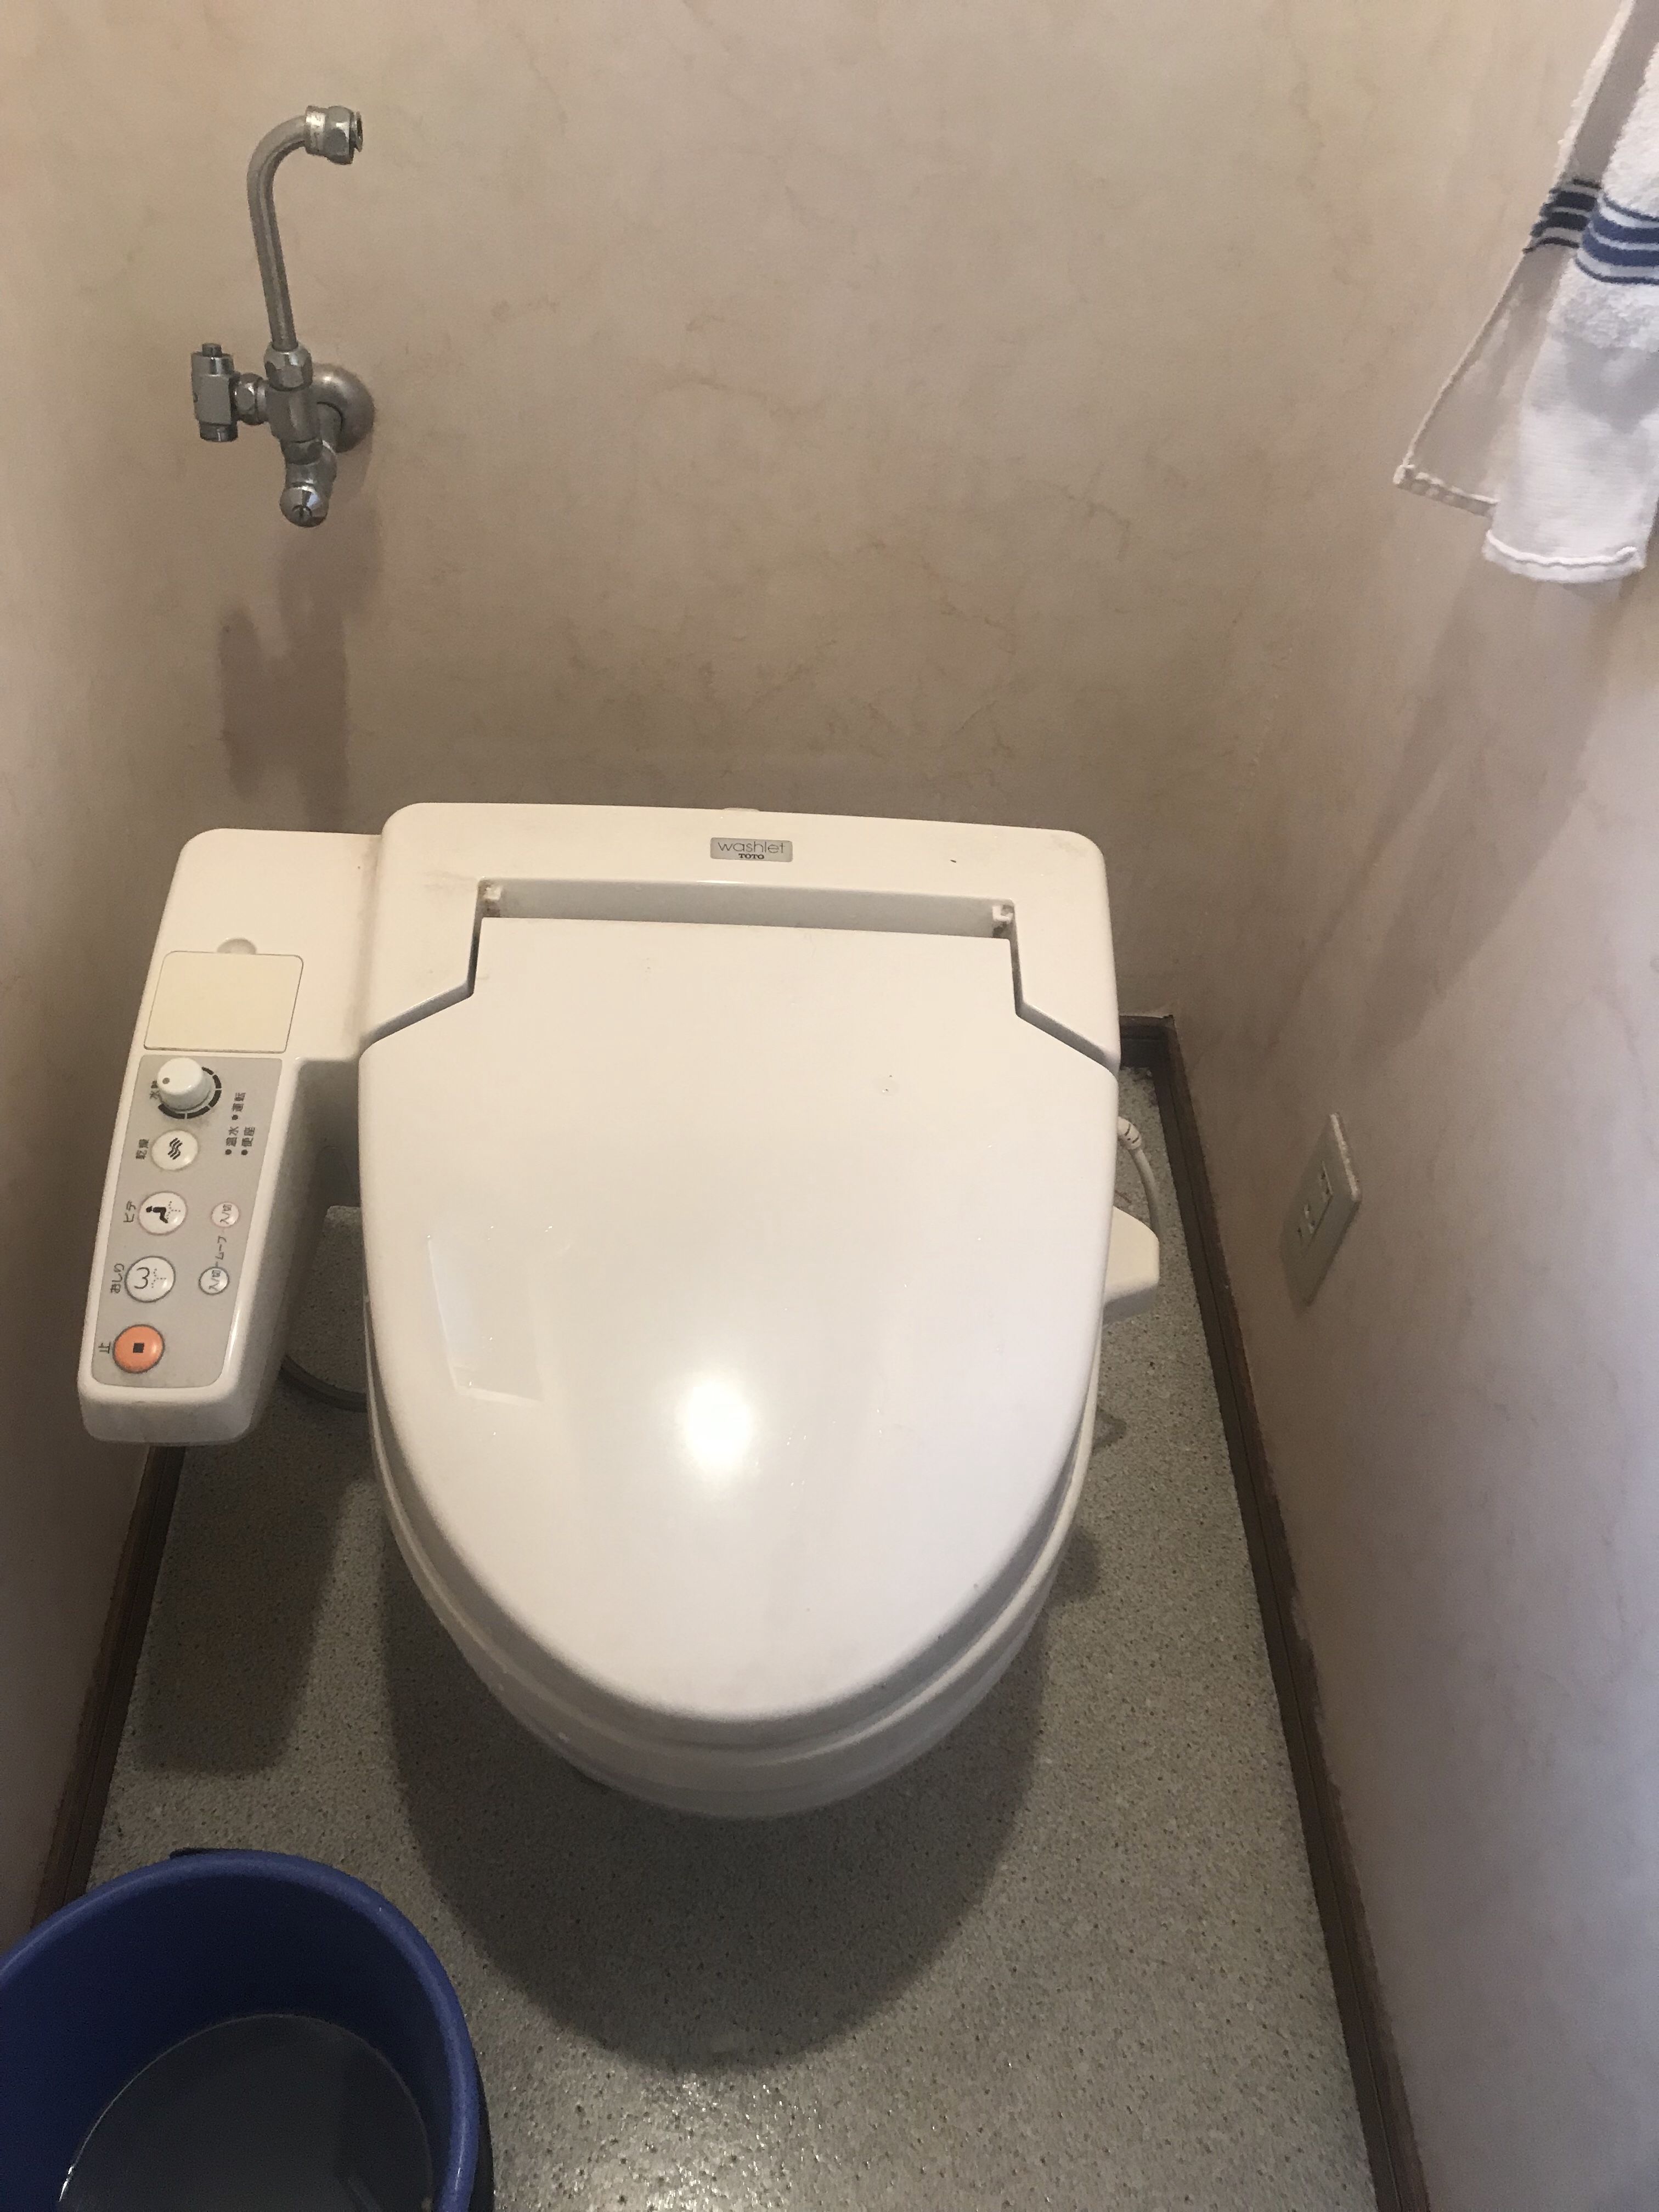 トイレ詰まり (トイレに異物を流してしまった) 京都市 水もれドルフィン